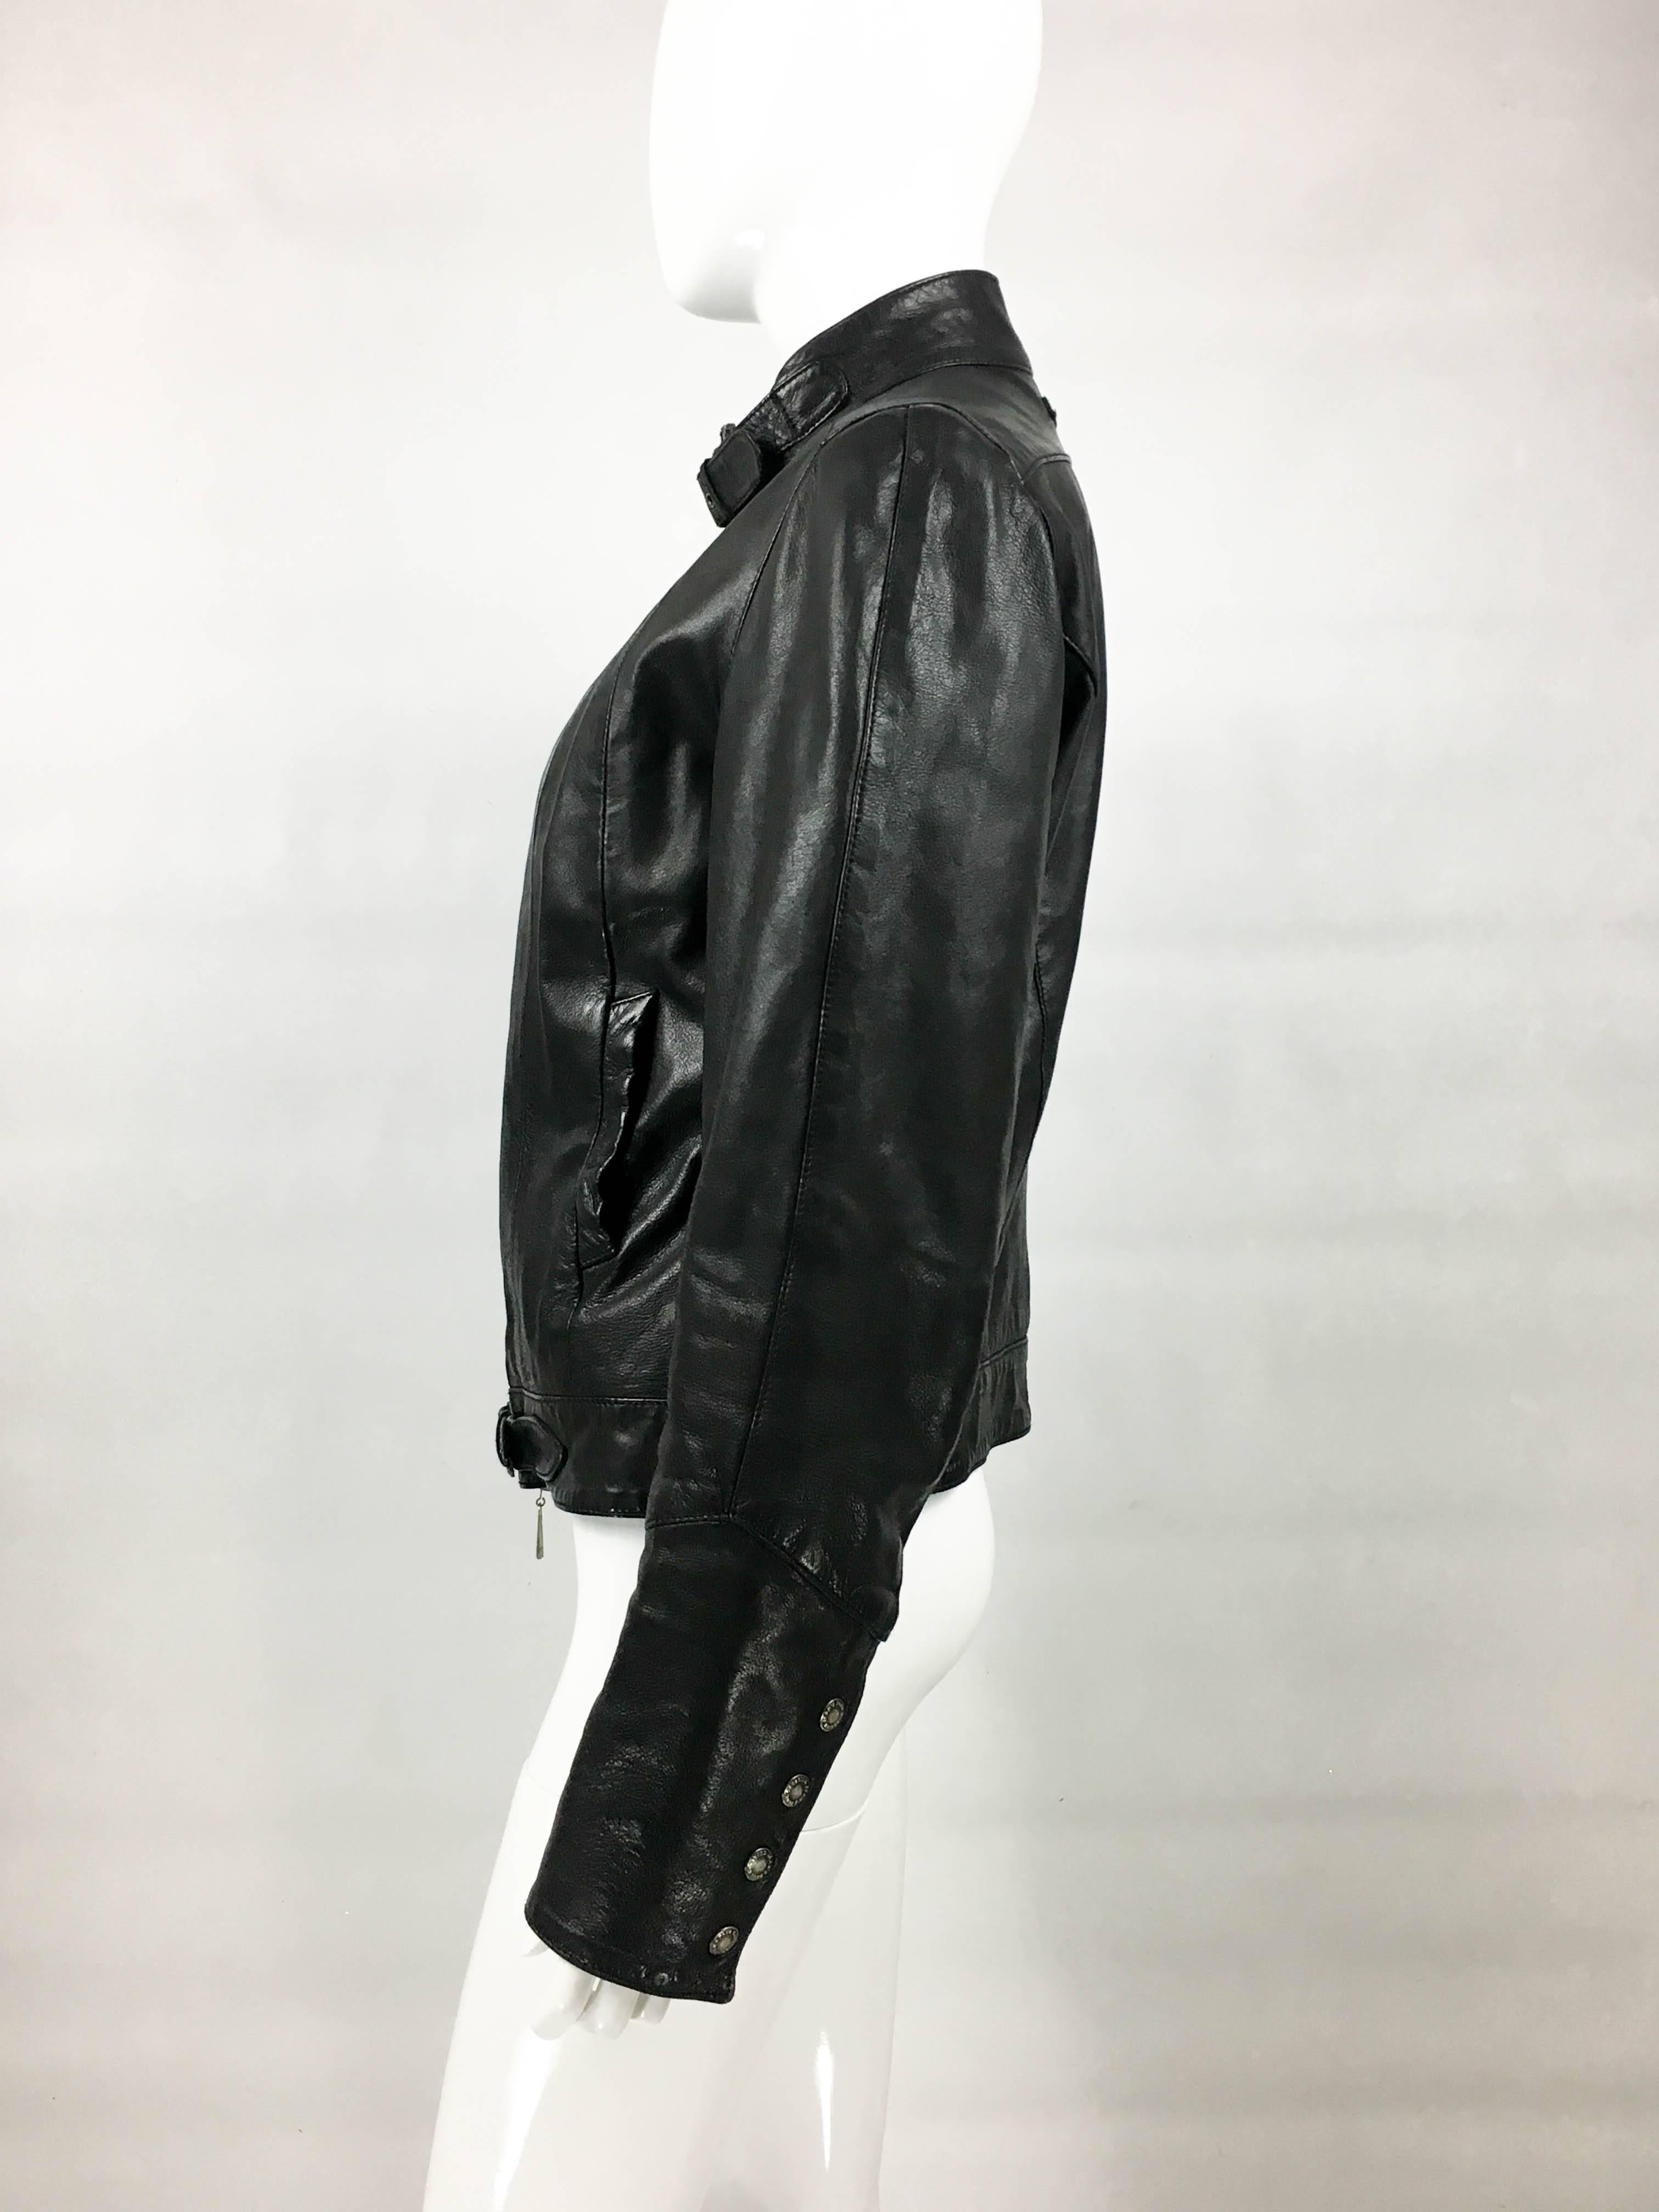 Jean Paul Gaultier Black Leather Biker Jacket 2